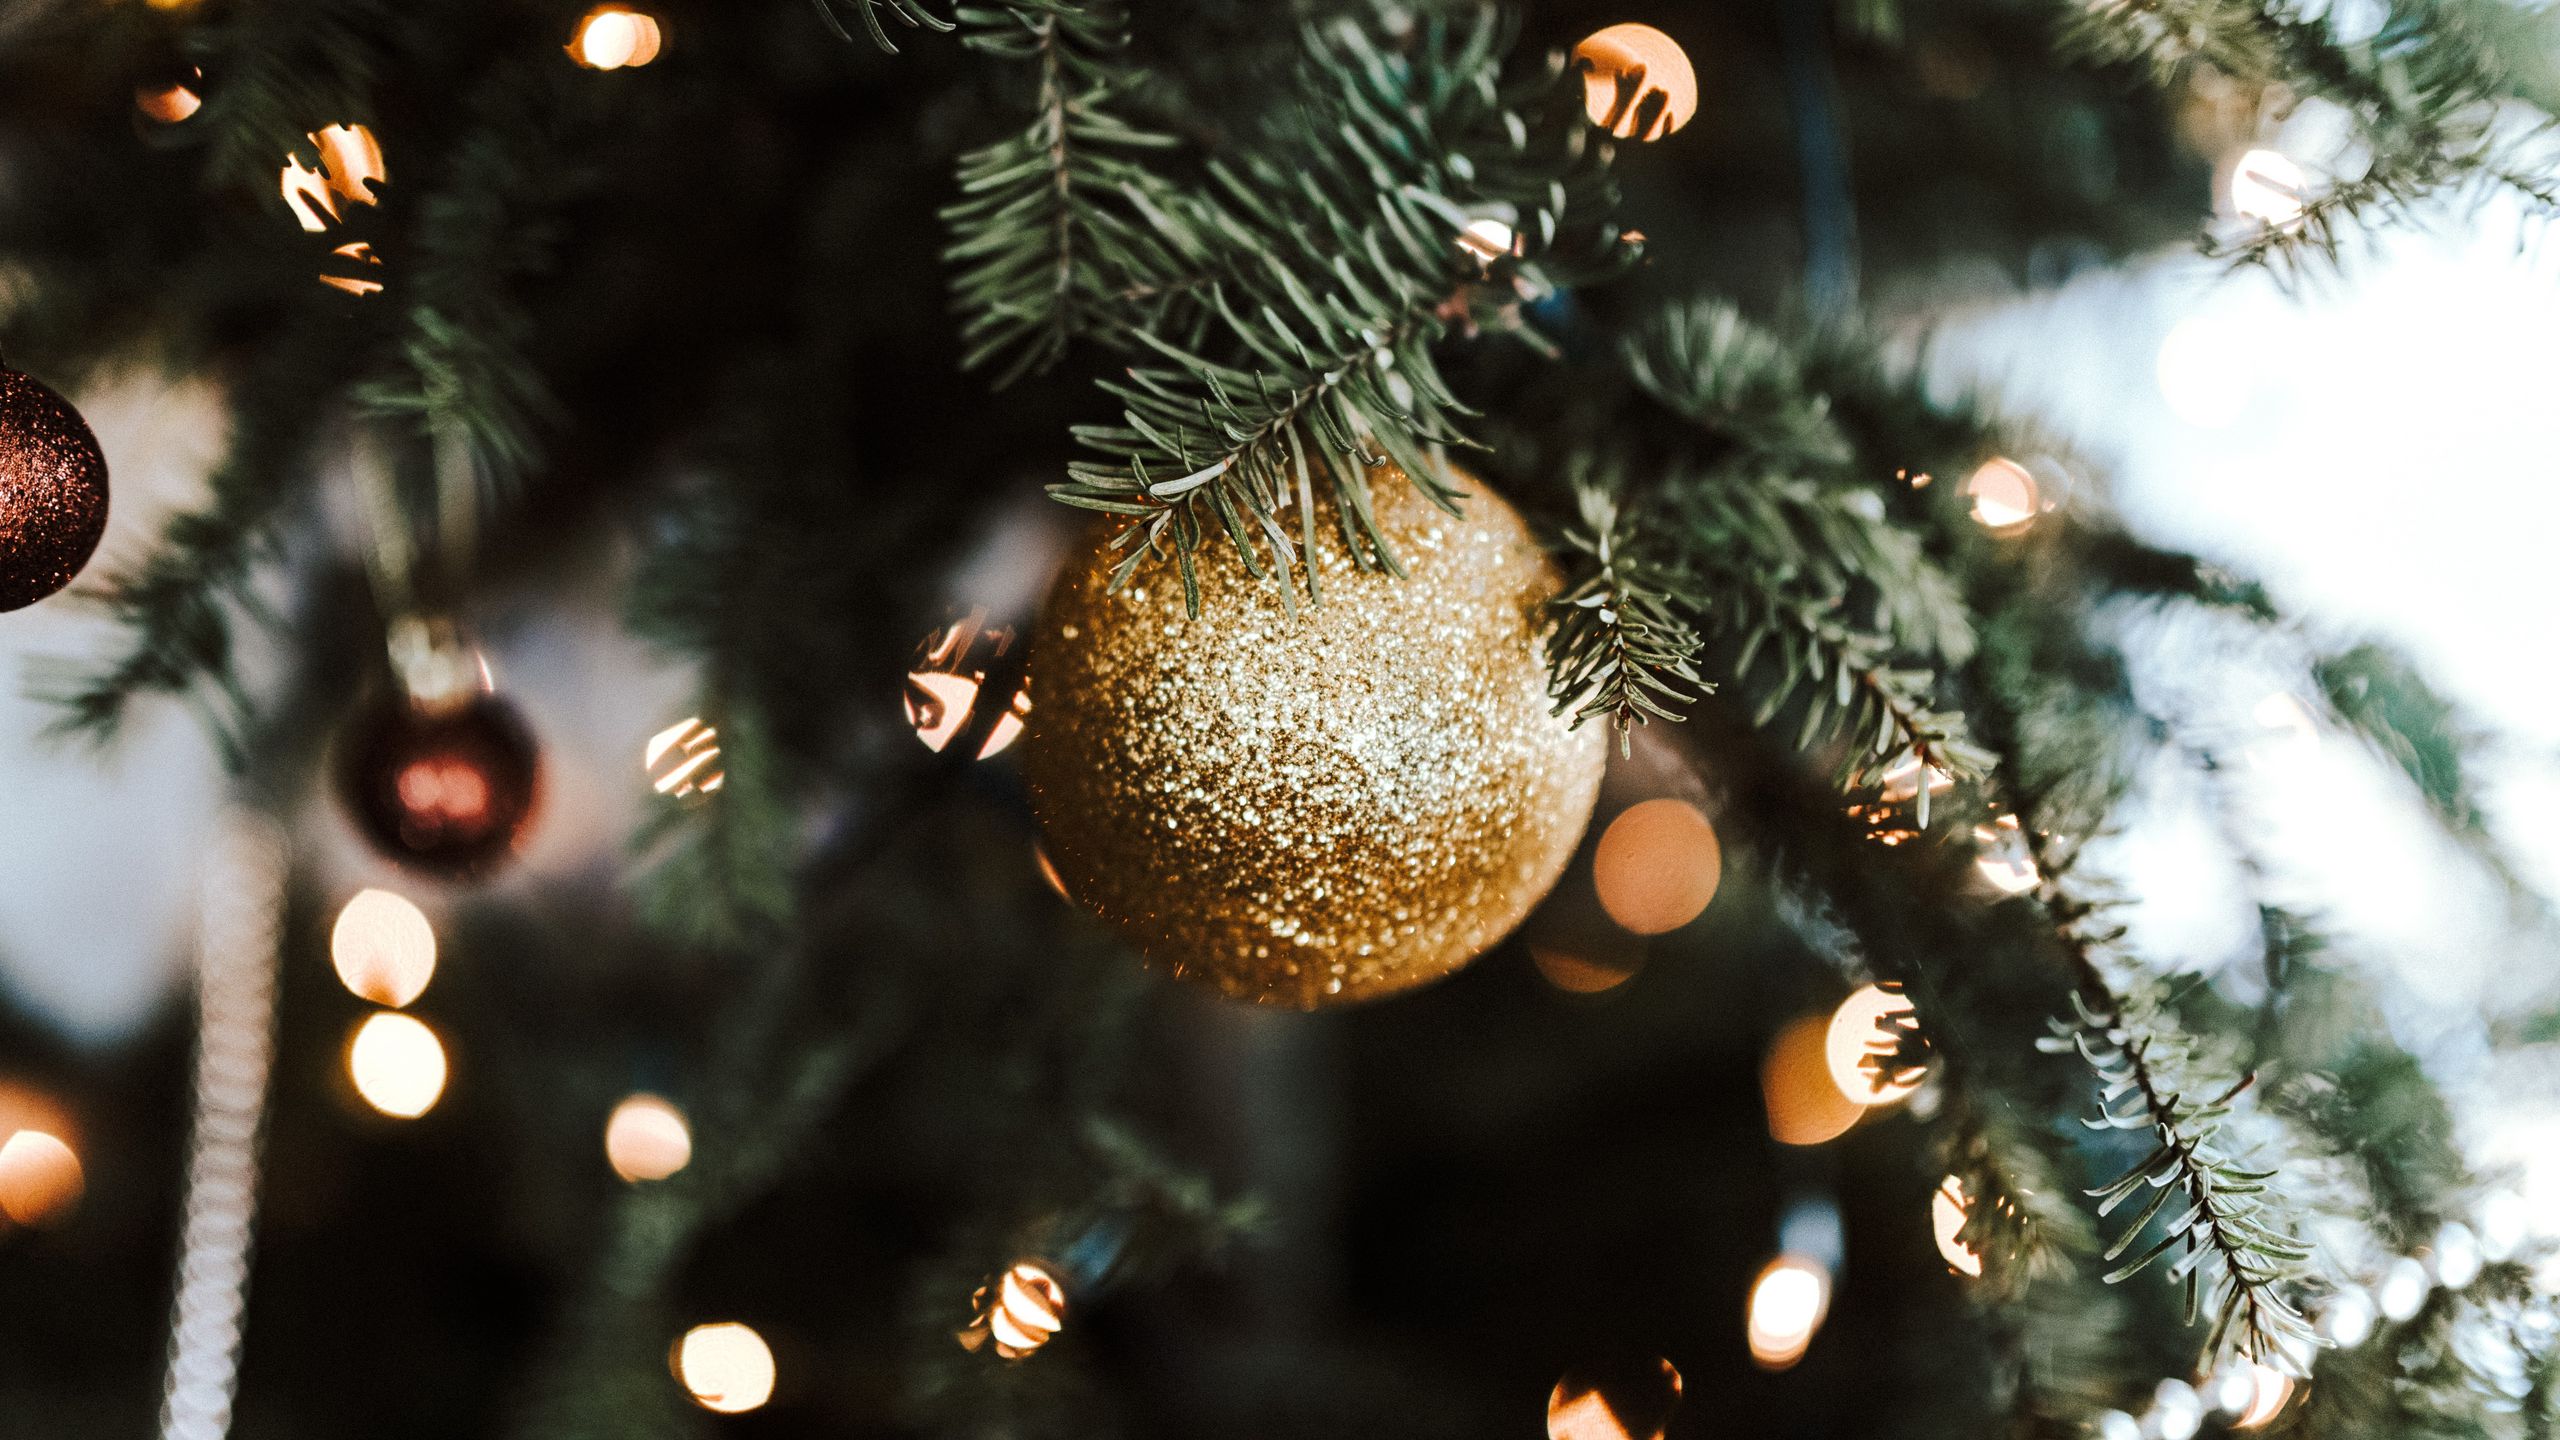 Nếu bạn đang muốn thay đổi cách trang trí cây thông (Christmas tree) của mình, hãy tham khảo những mẫu quả cầu (ball) trang trí độc đáo và tinh tế nhất. Chúng tôi chắc chắn sẽ giúp bạn biến một cây thông trở nên đẹp hơn và lộng lẫy hơn trong mùa lễ hội này.